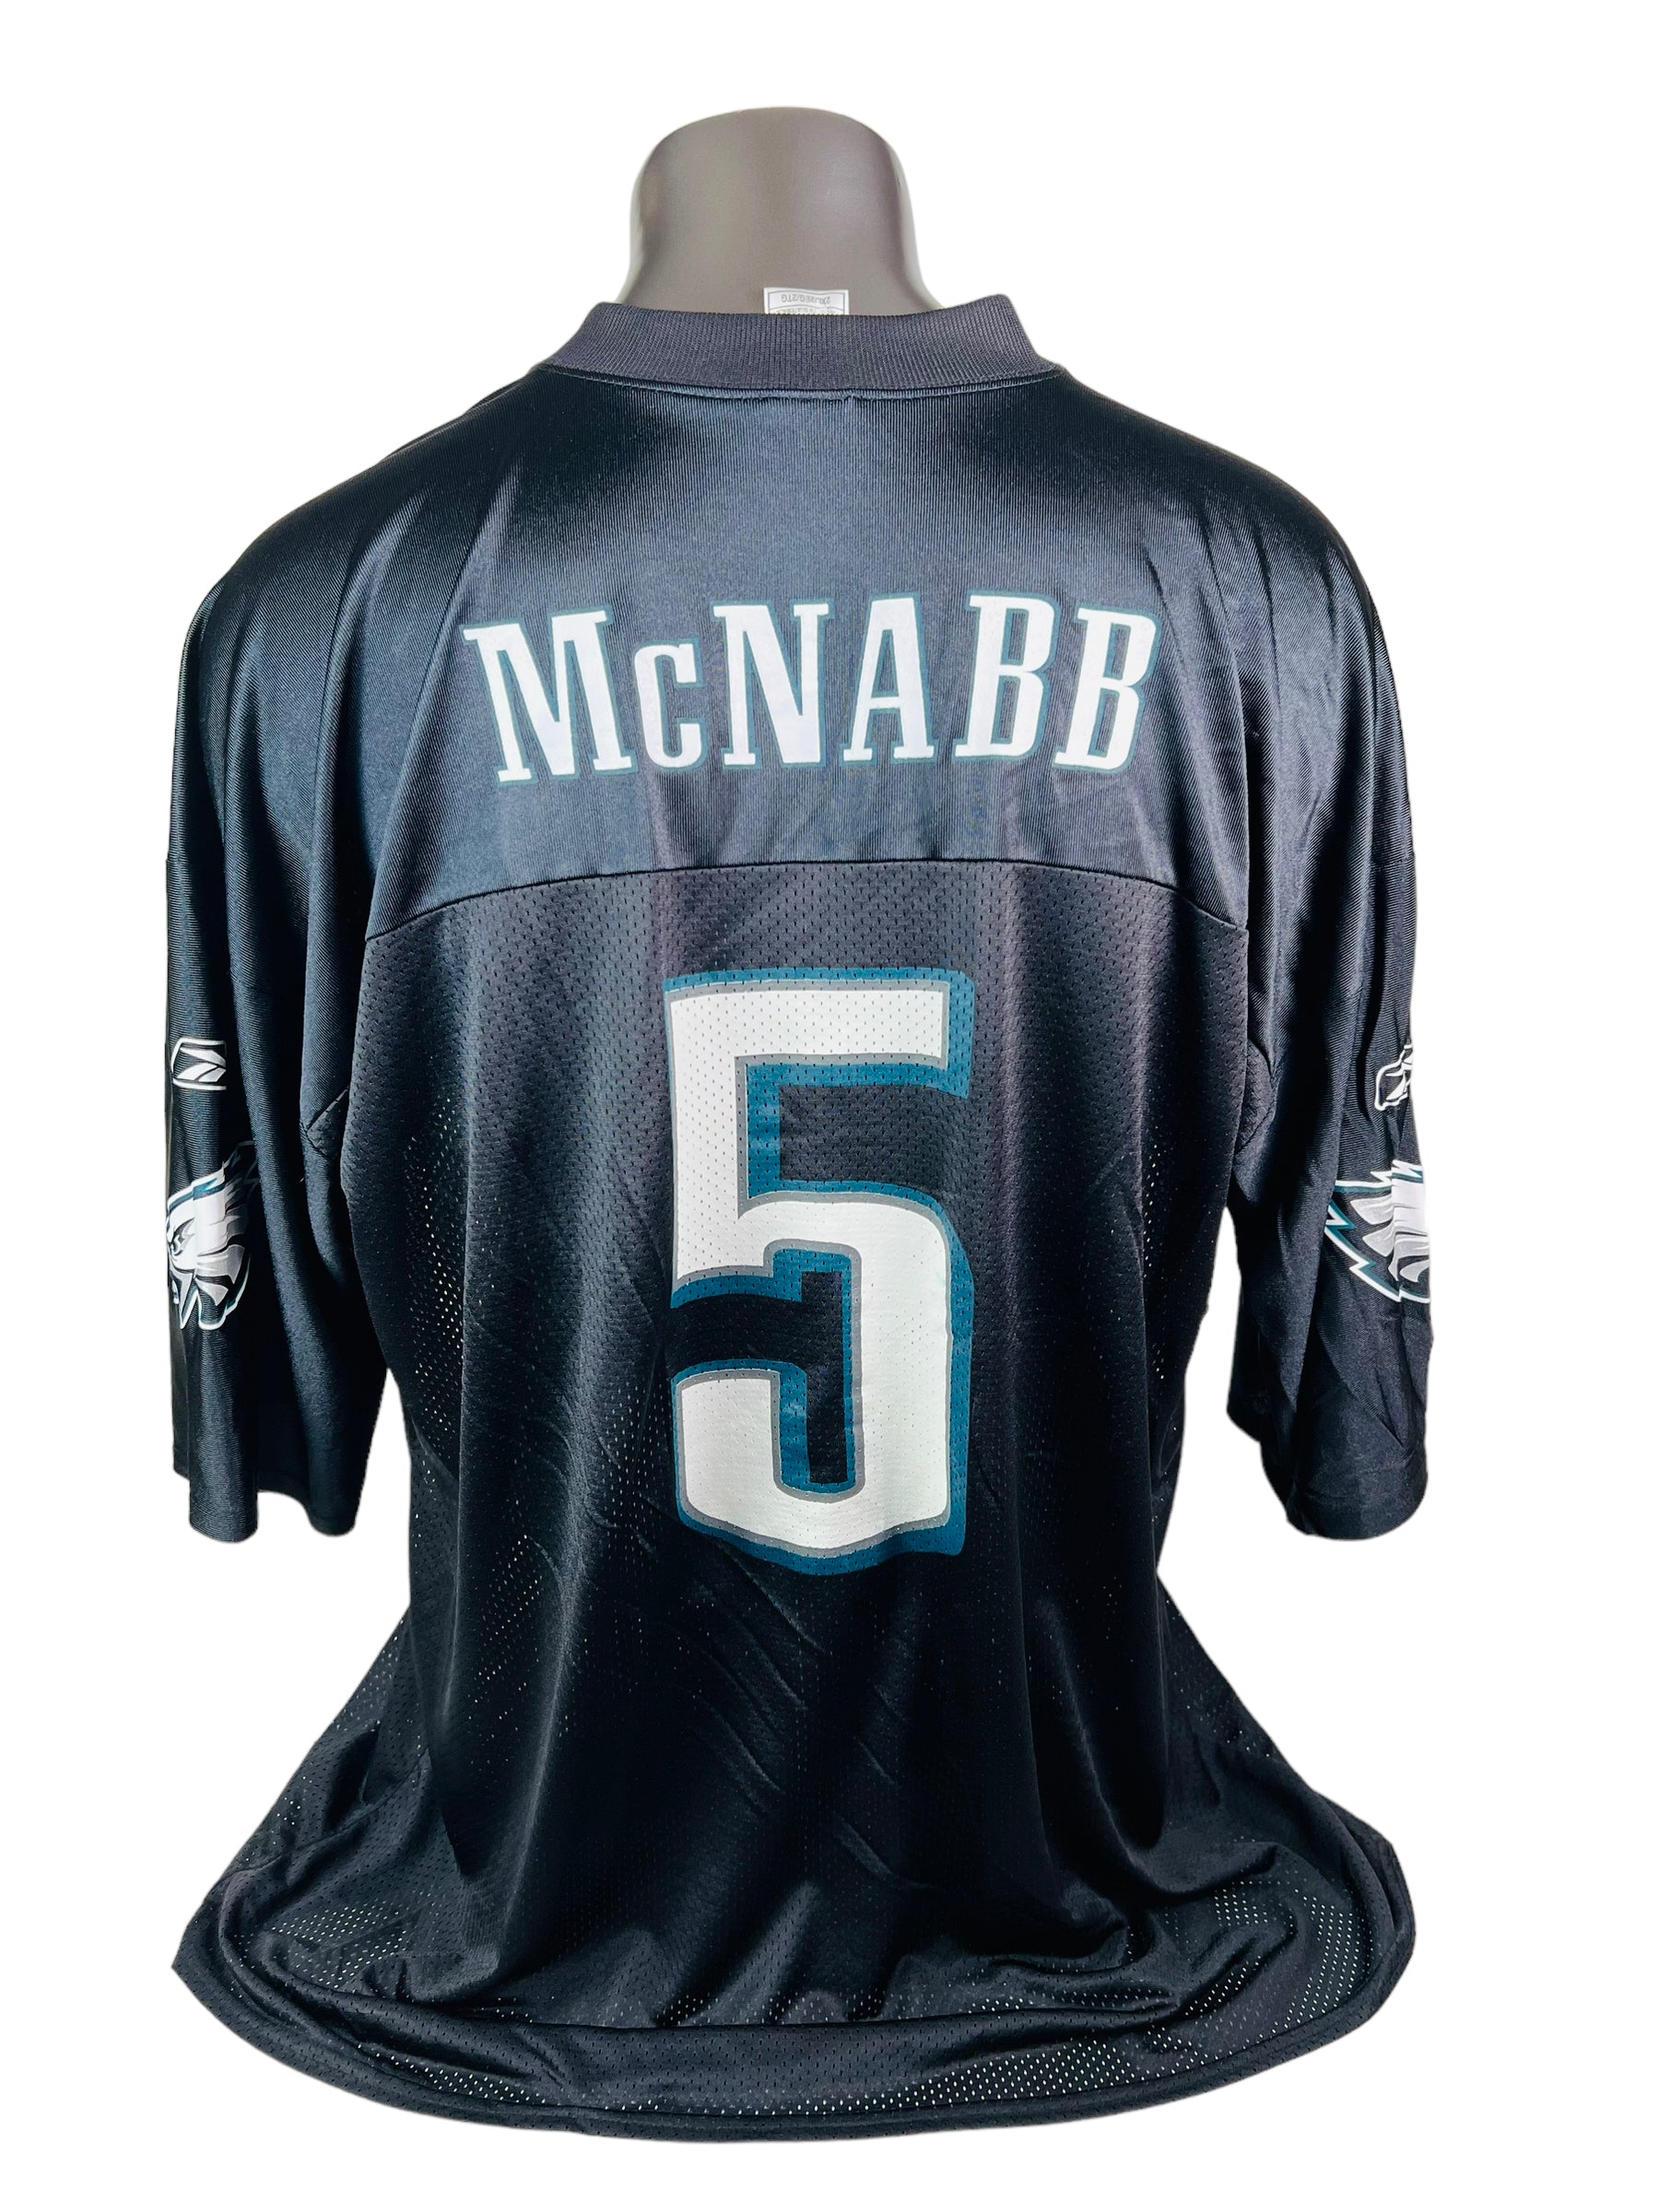 Philadelphia Eagles NFL Donovan McNabb Vintage Name Number Jersey